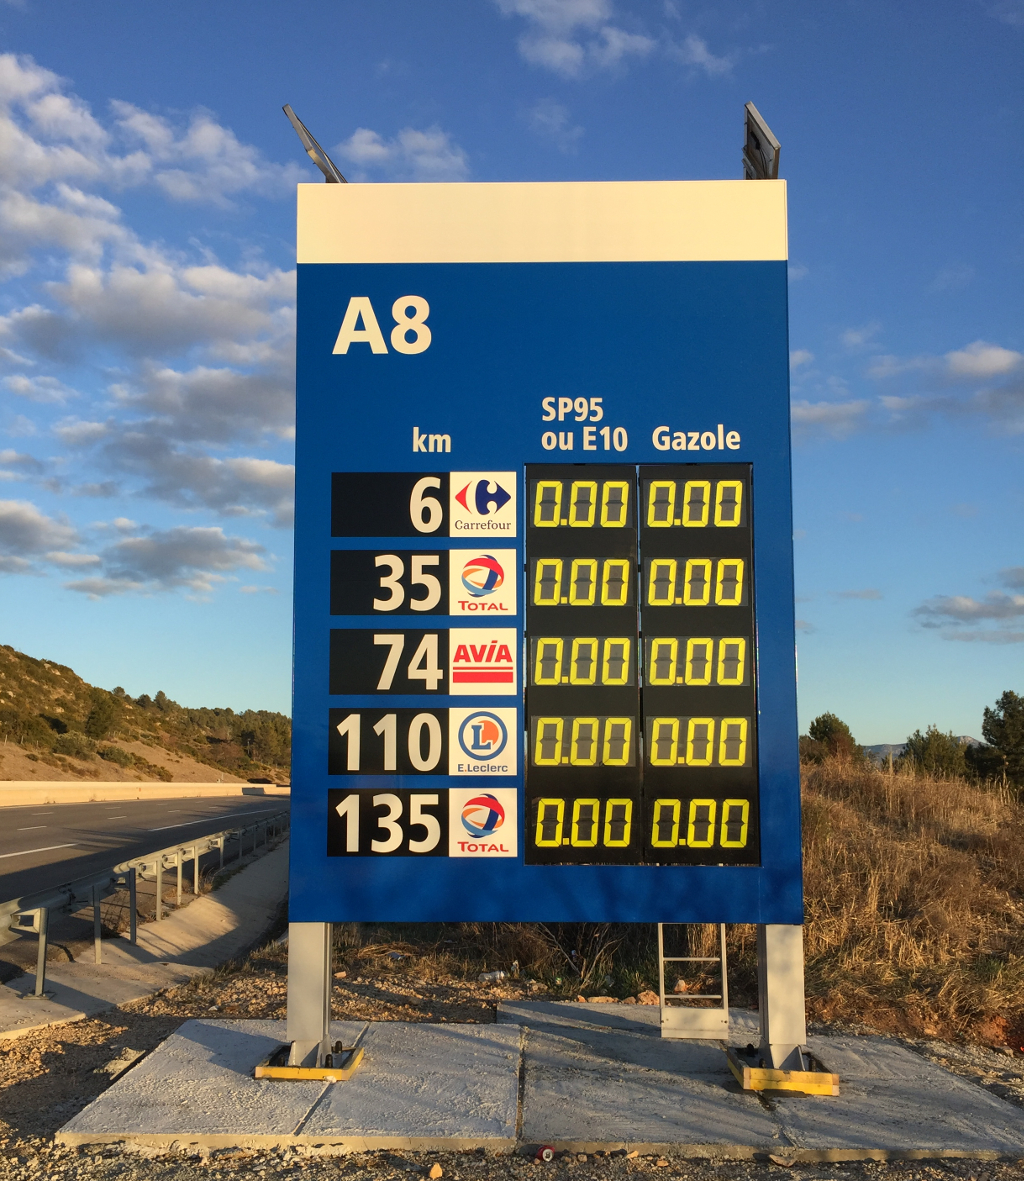 Panneau comparatif prix carburants réseau autoroutier ESCOTA